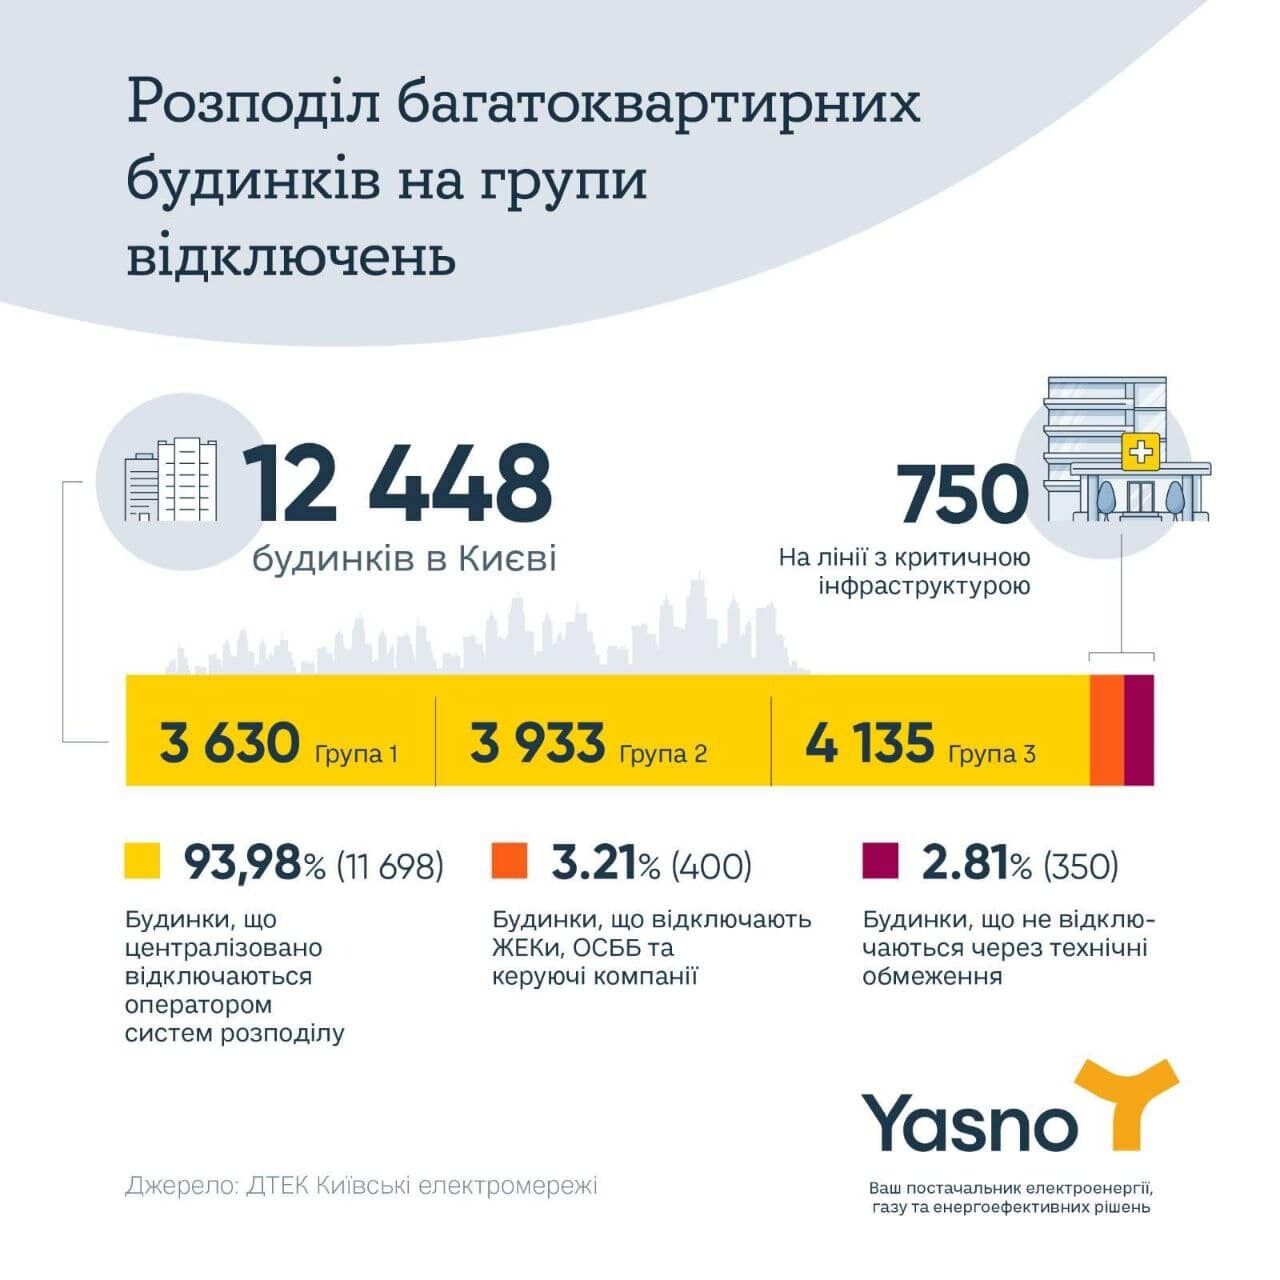 В YASNO розповіли, скільки в Києві житлових будинків, де відключення світла неможливі технічно 